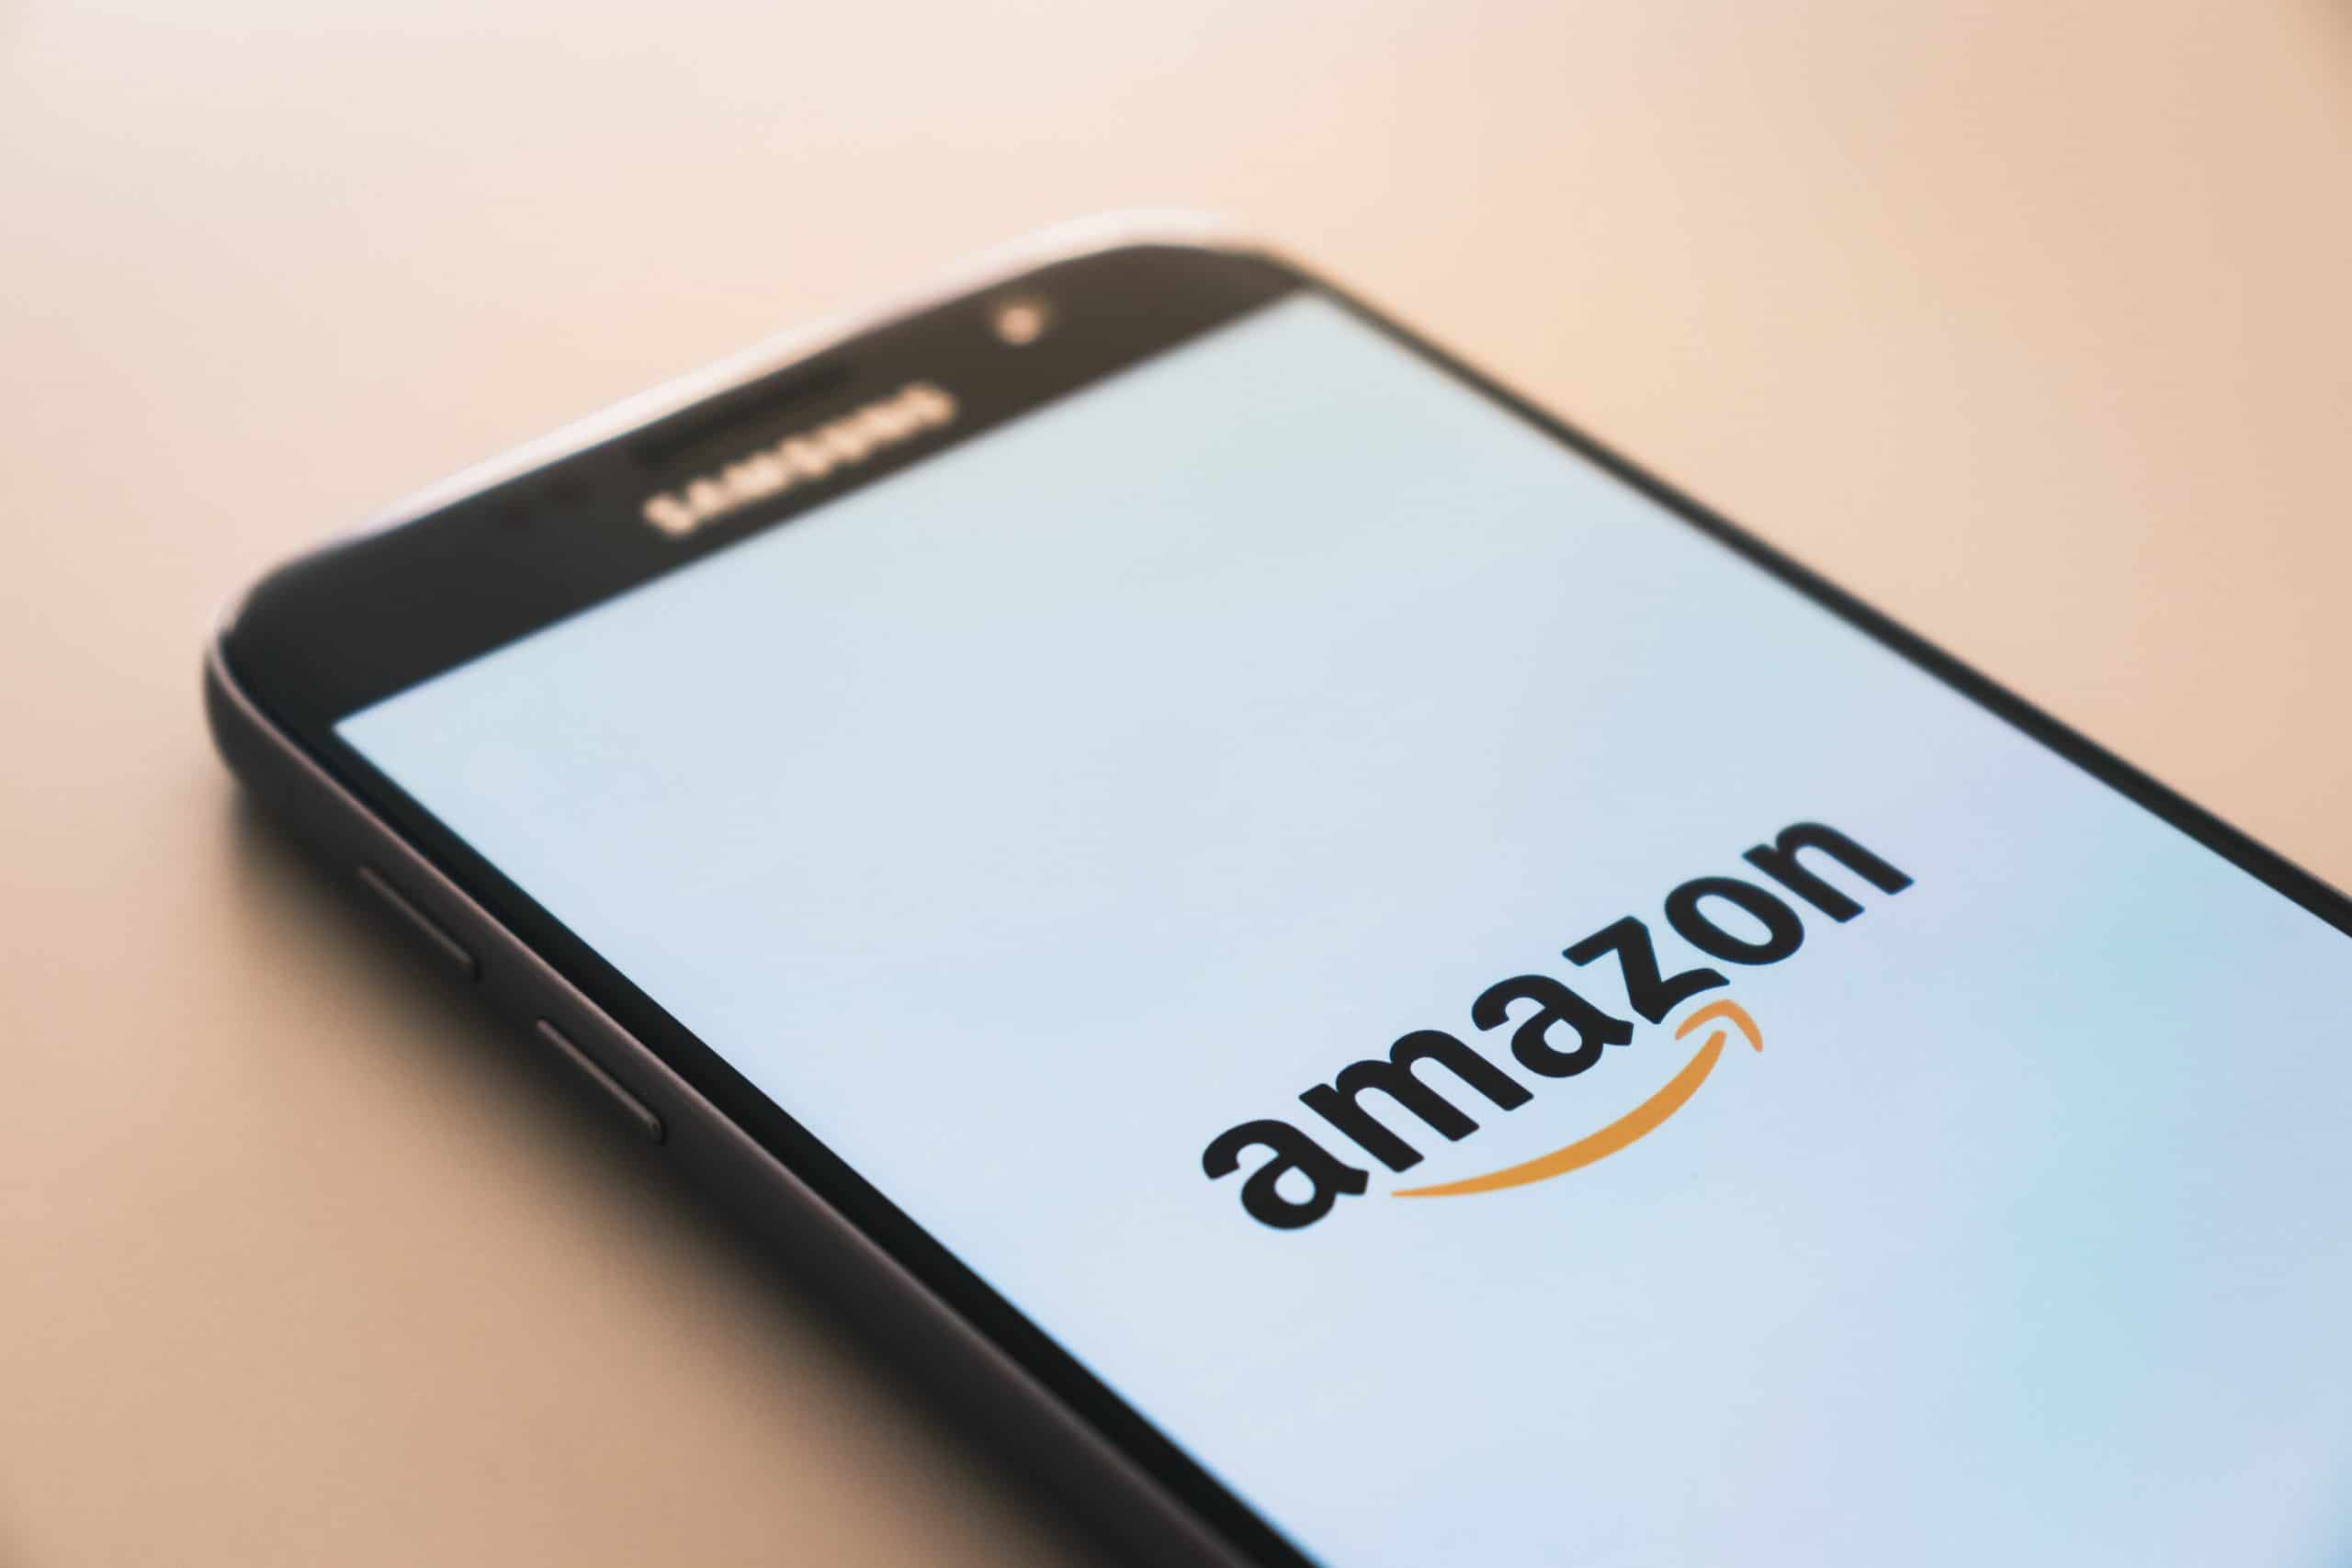 La imagen muestra teléfono celular con el logo de Amazon